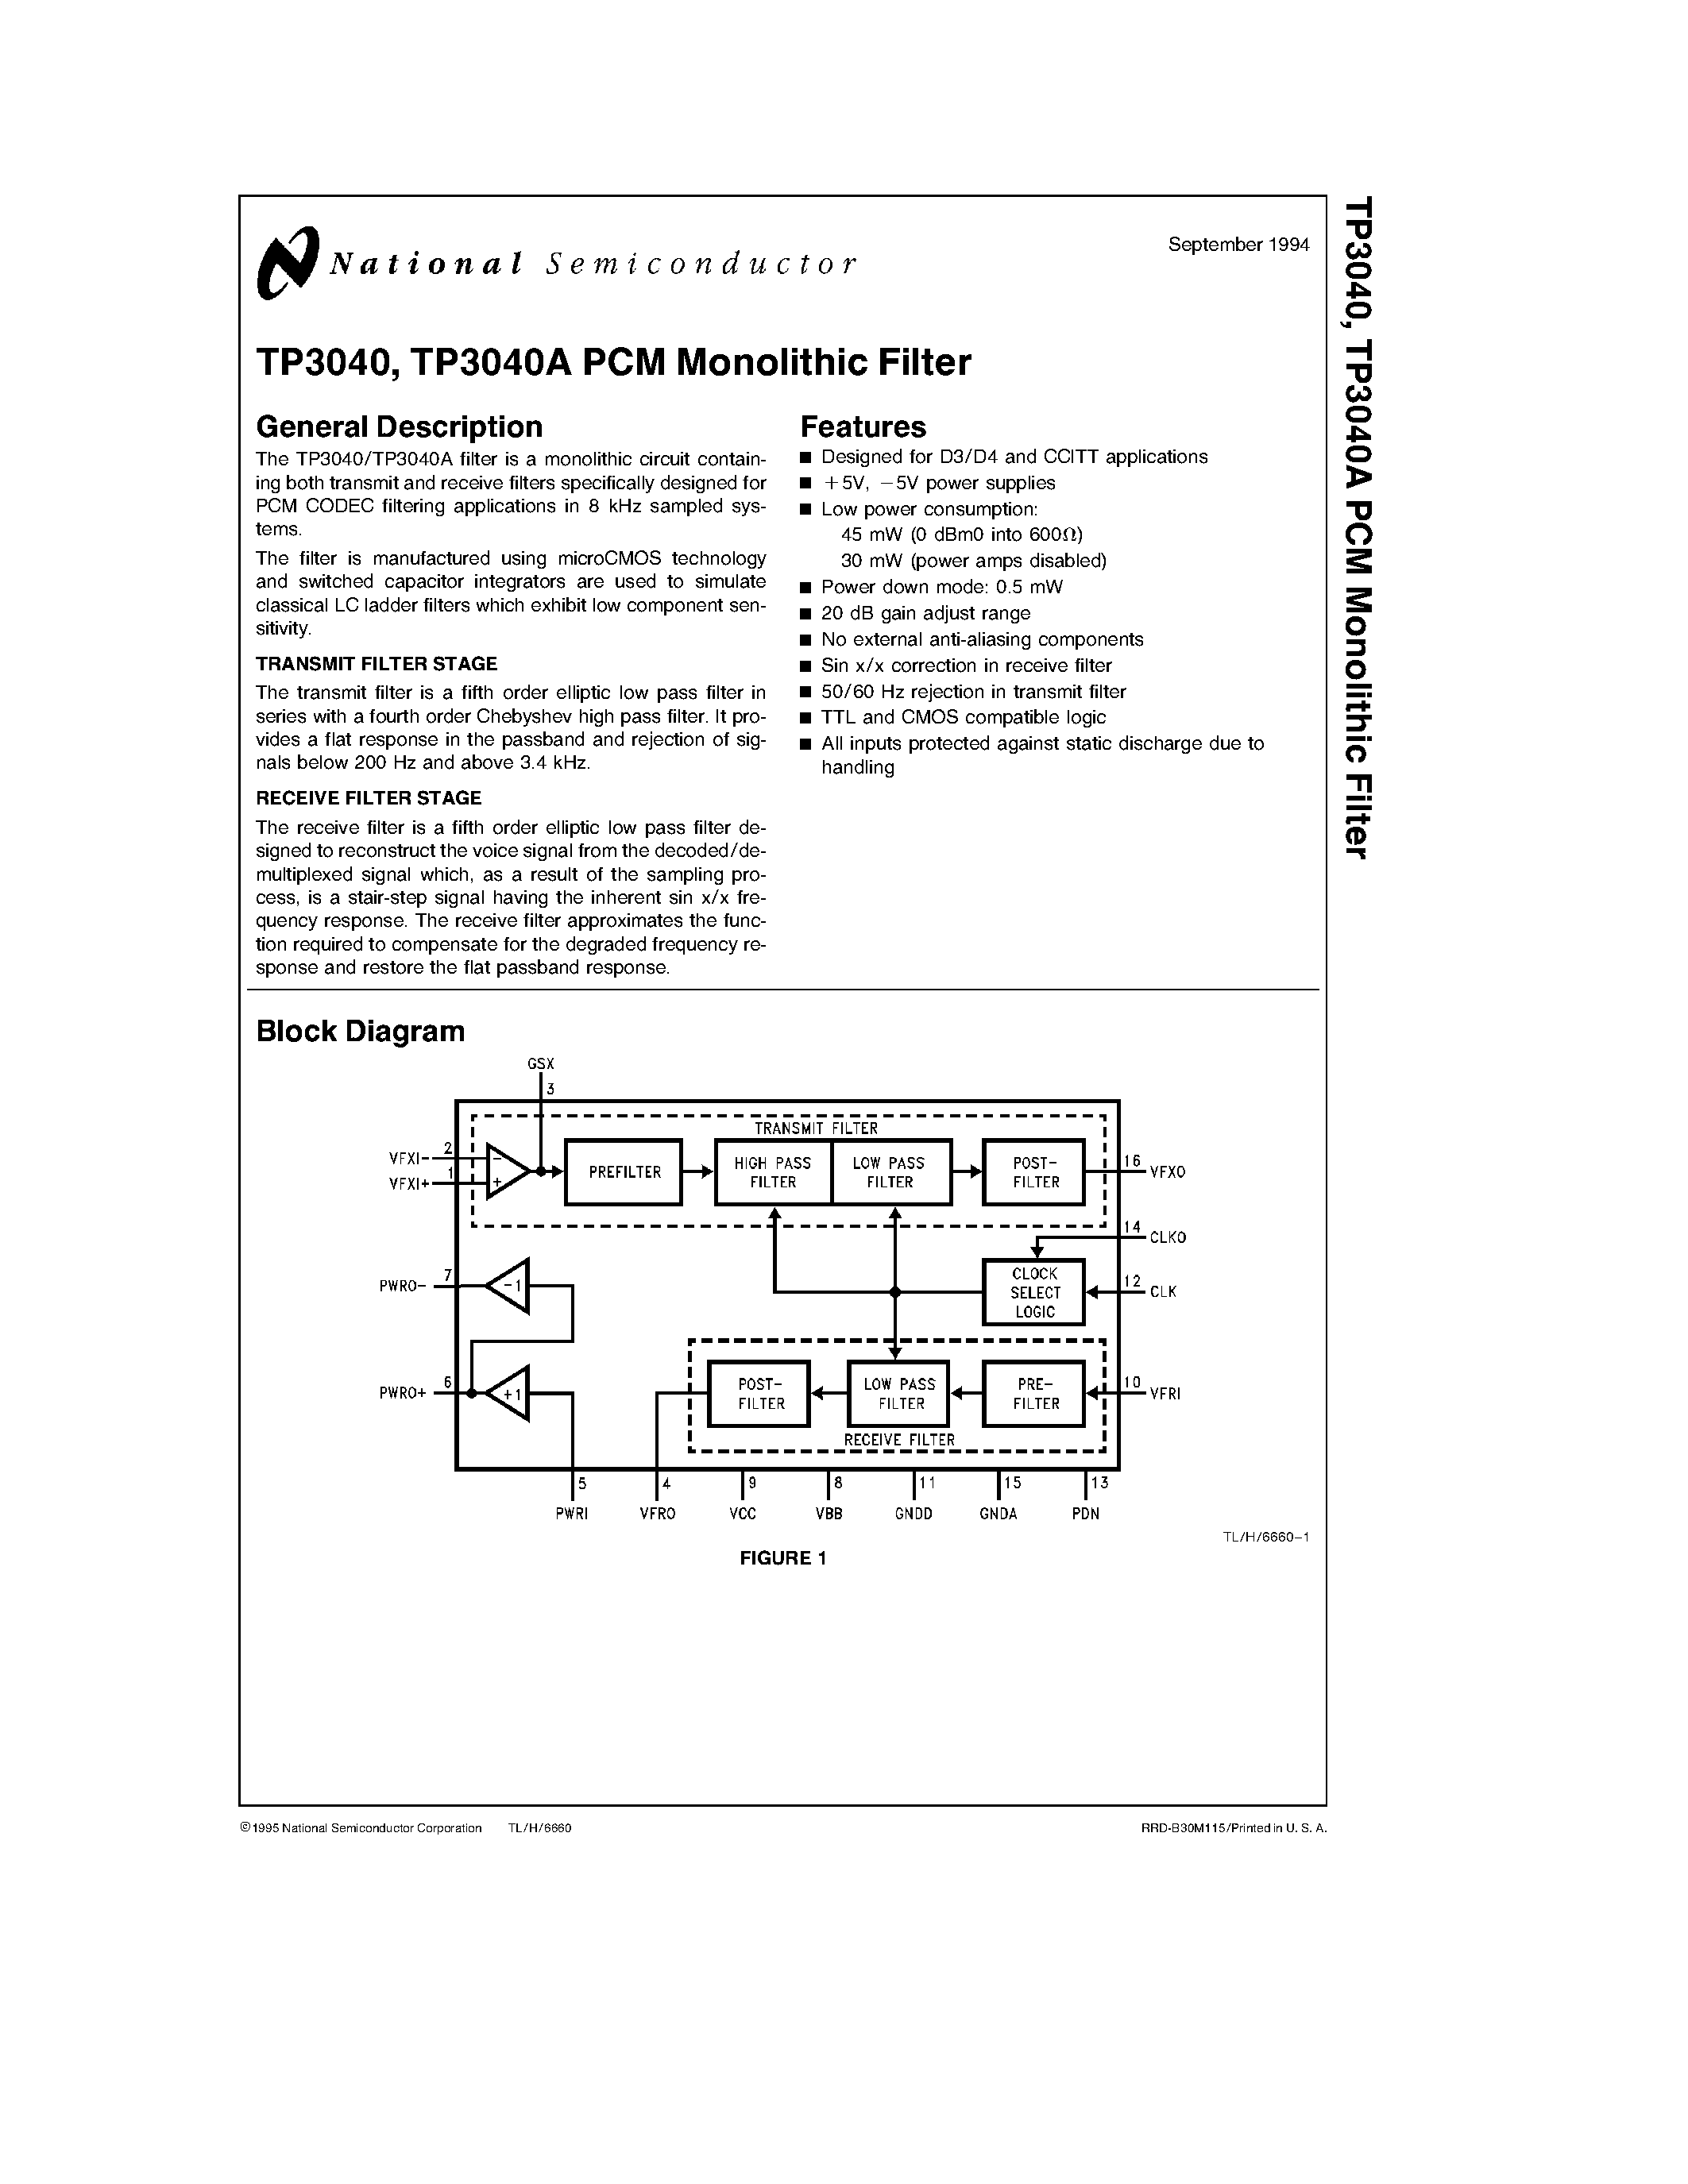 Даташит TP3040AJ - TP3040/ TP3040A PCM Monolithic Filter страница 1